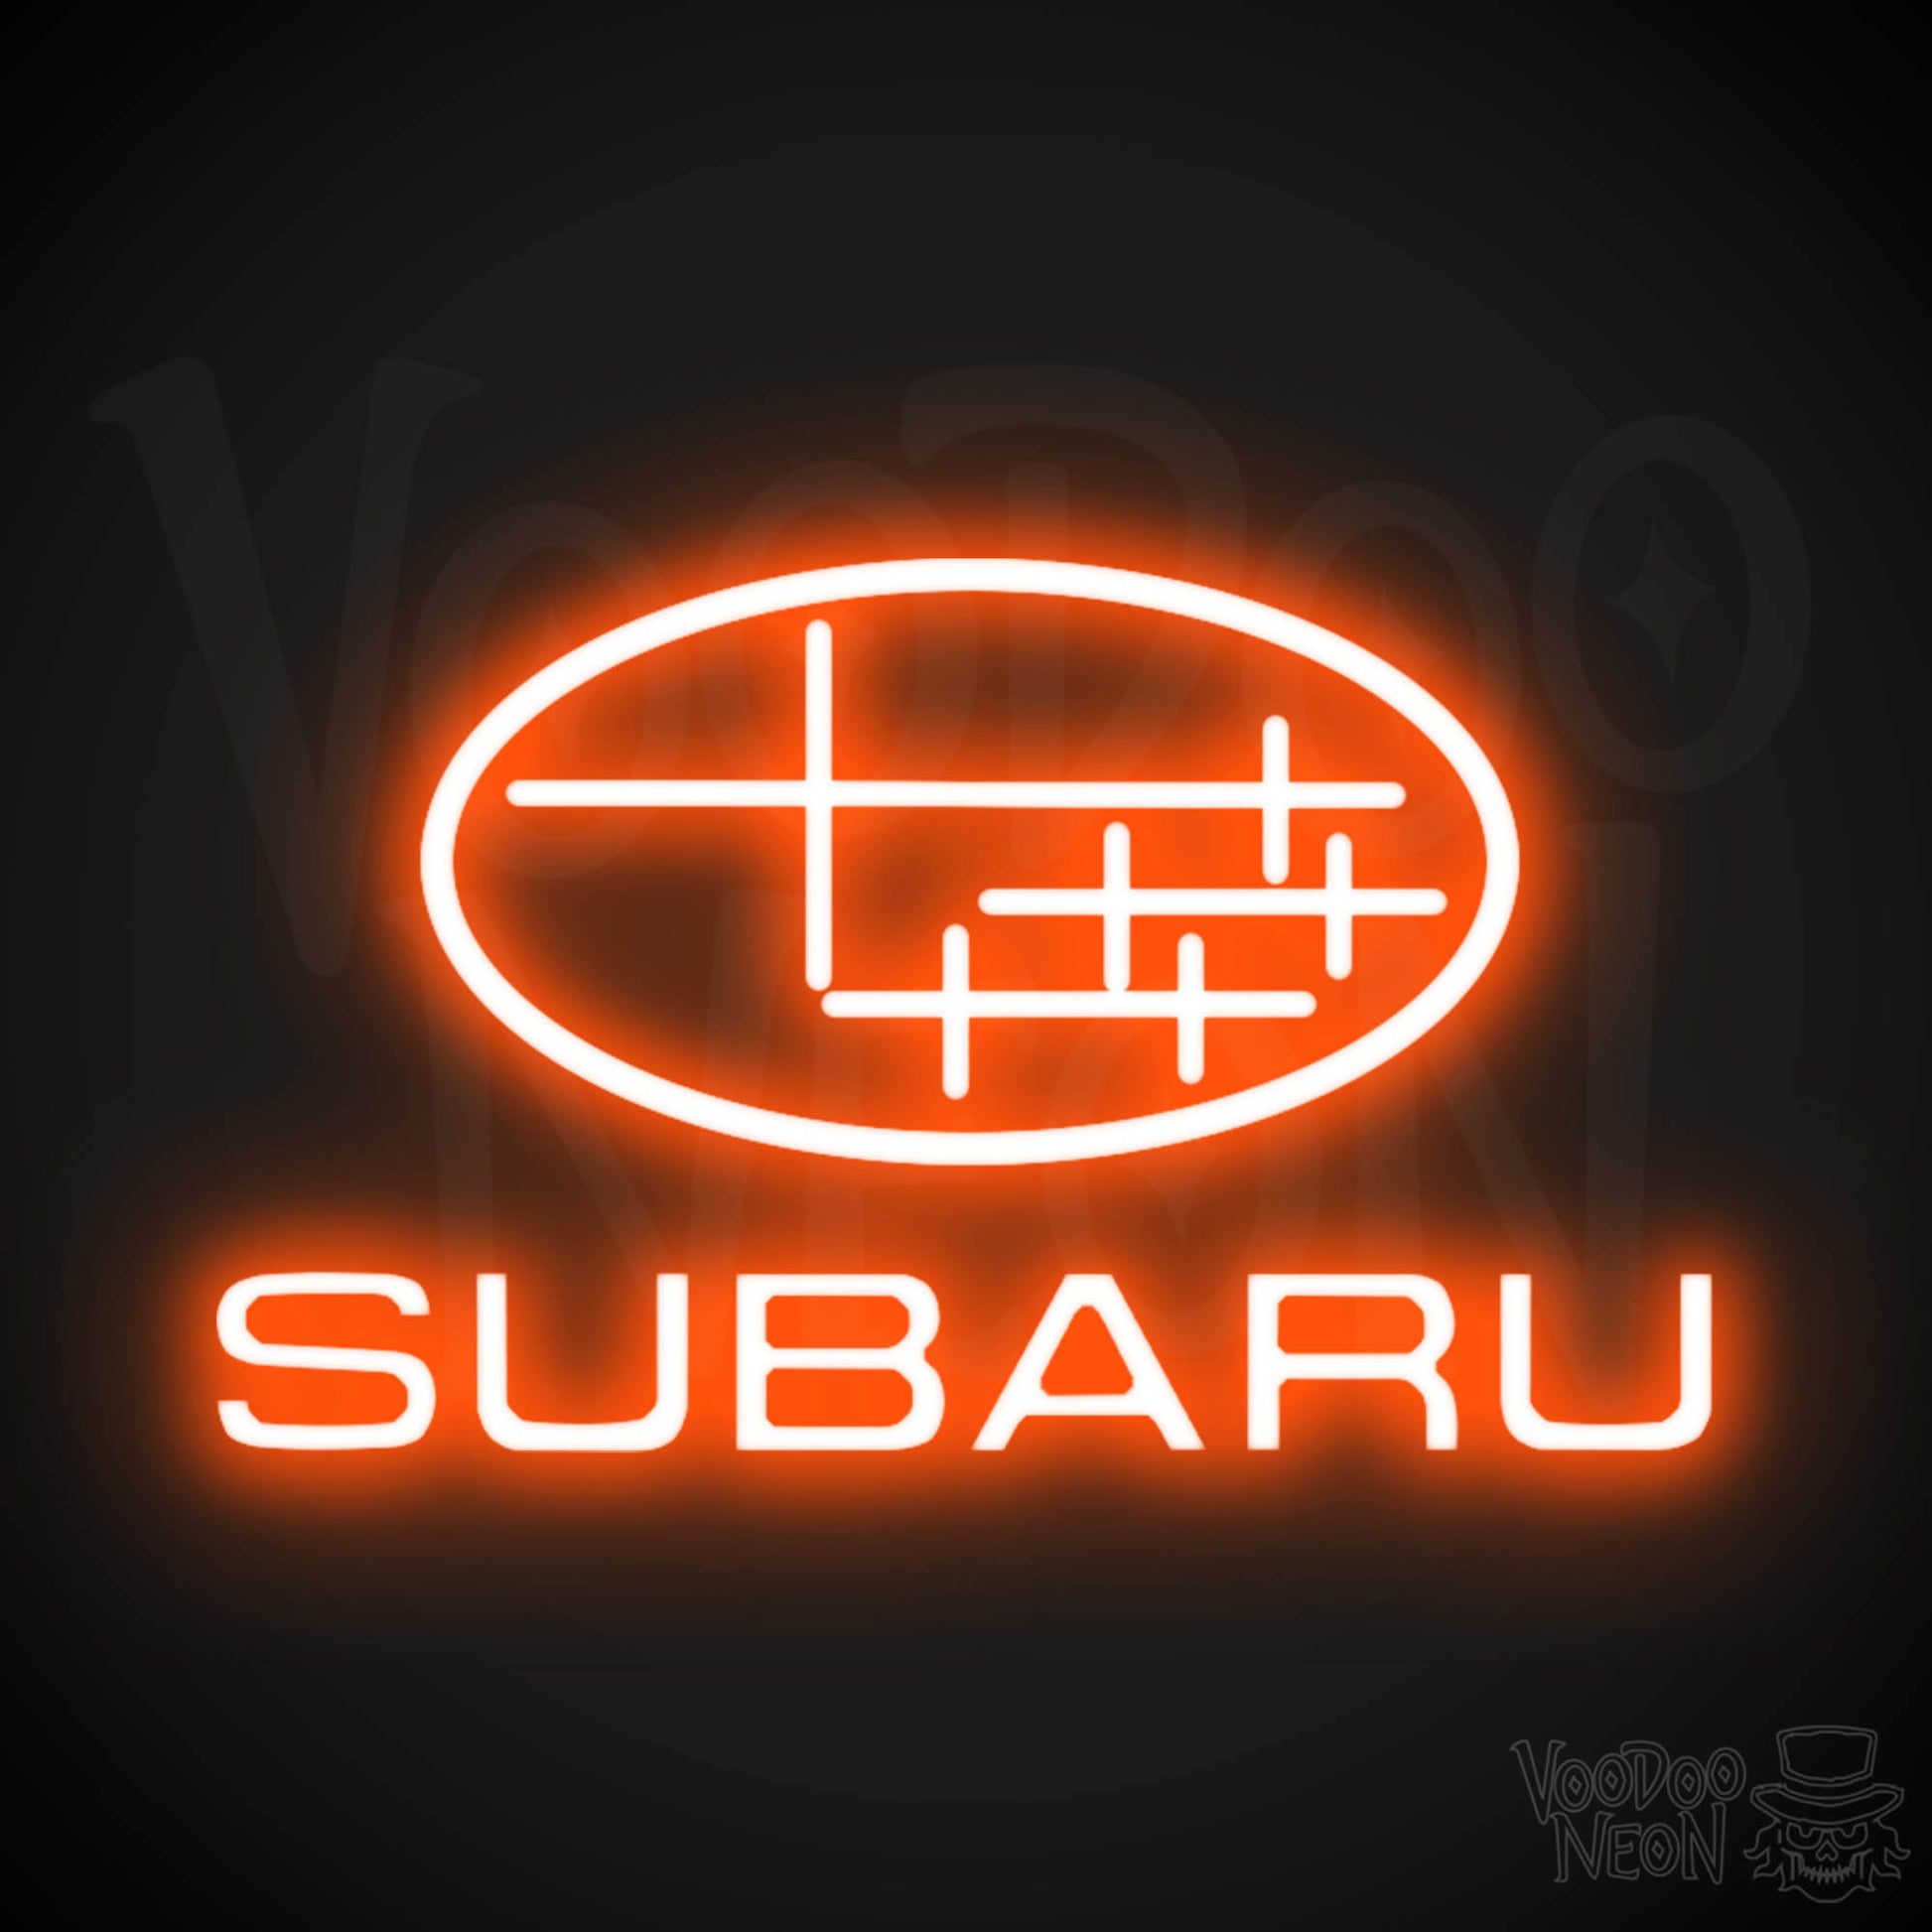 Subaru Neon Sign - Subaru Sign - Subaru Decor - Wall Art - Color Orange